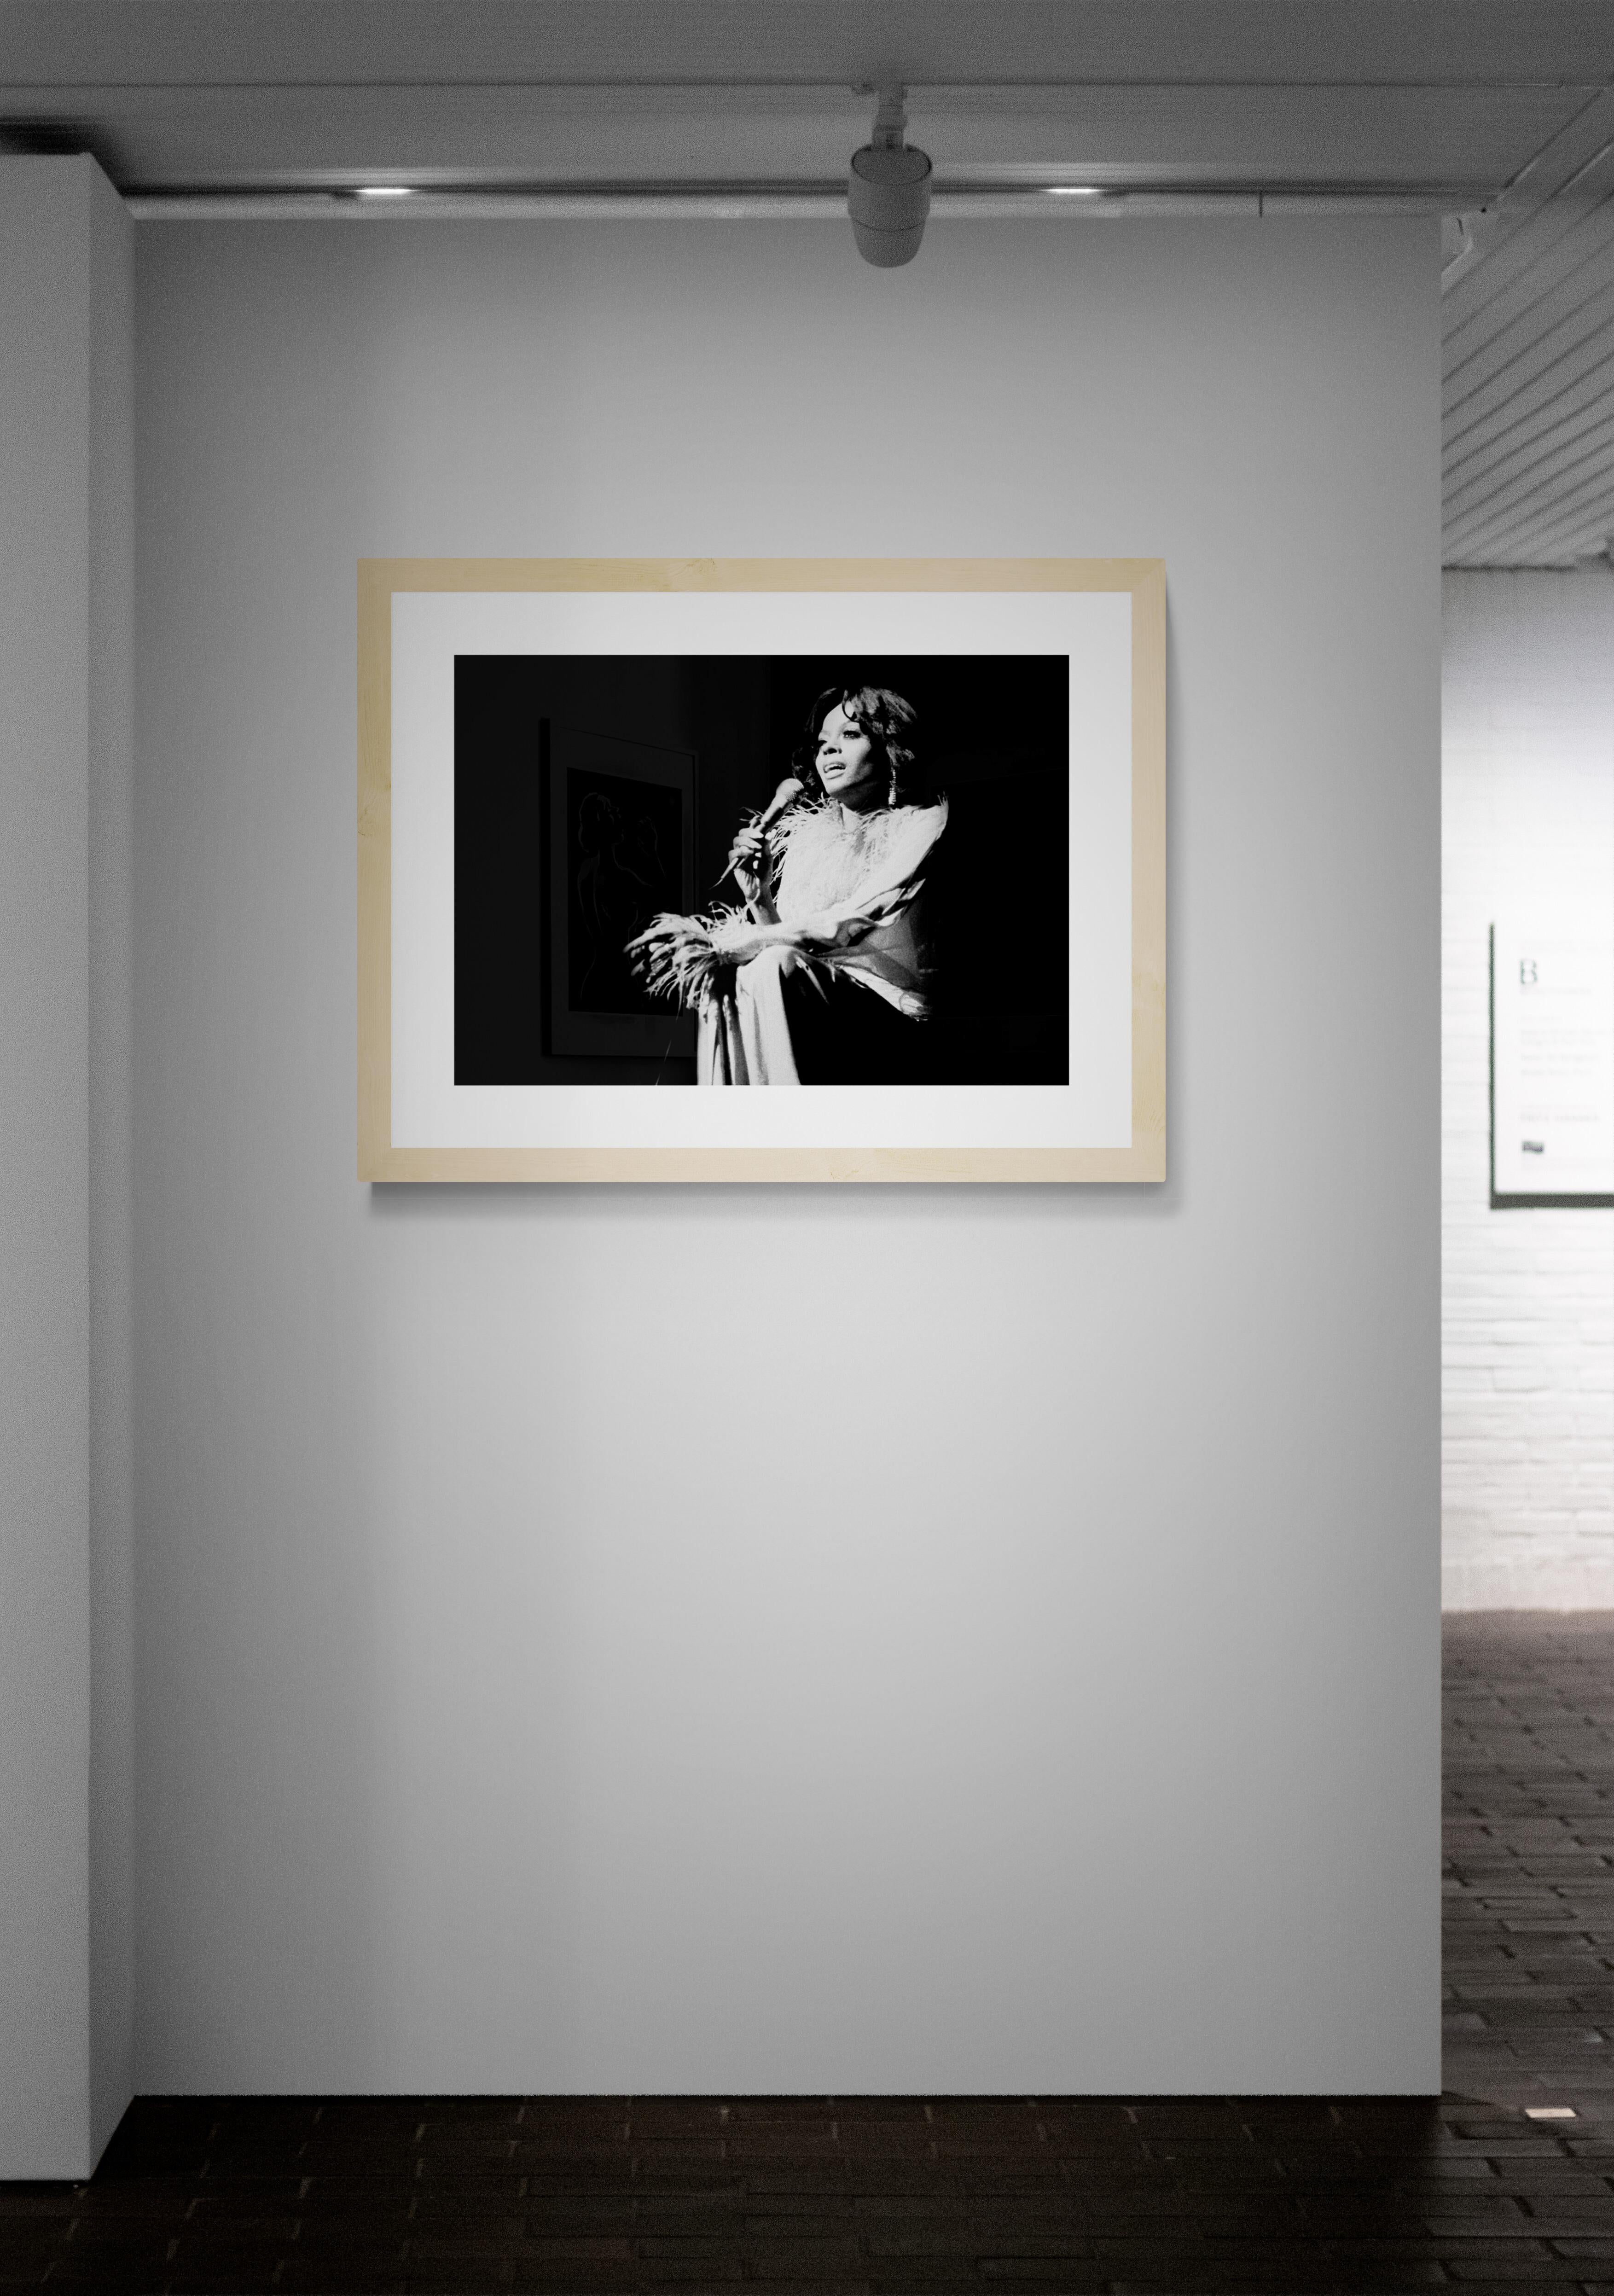 Titel: Diana Ross #1 Foto   Ein Abend mit Diana Ross im The Palace Theater in New York City, 1976.
Künstler: Richard E. Aaron
Nachlass-Edition: Handnummeriert mit Nachlassstempel im Rand, Signaturstempel auf der Rückseite, Pigmentdruck auf